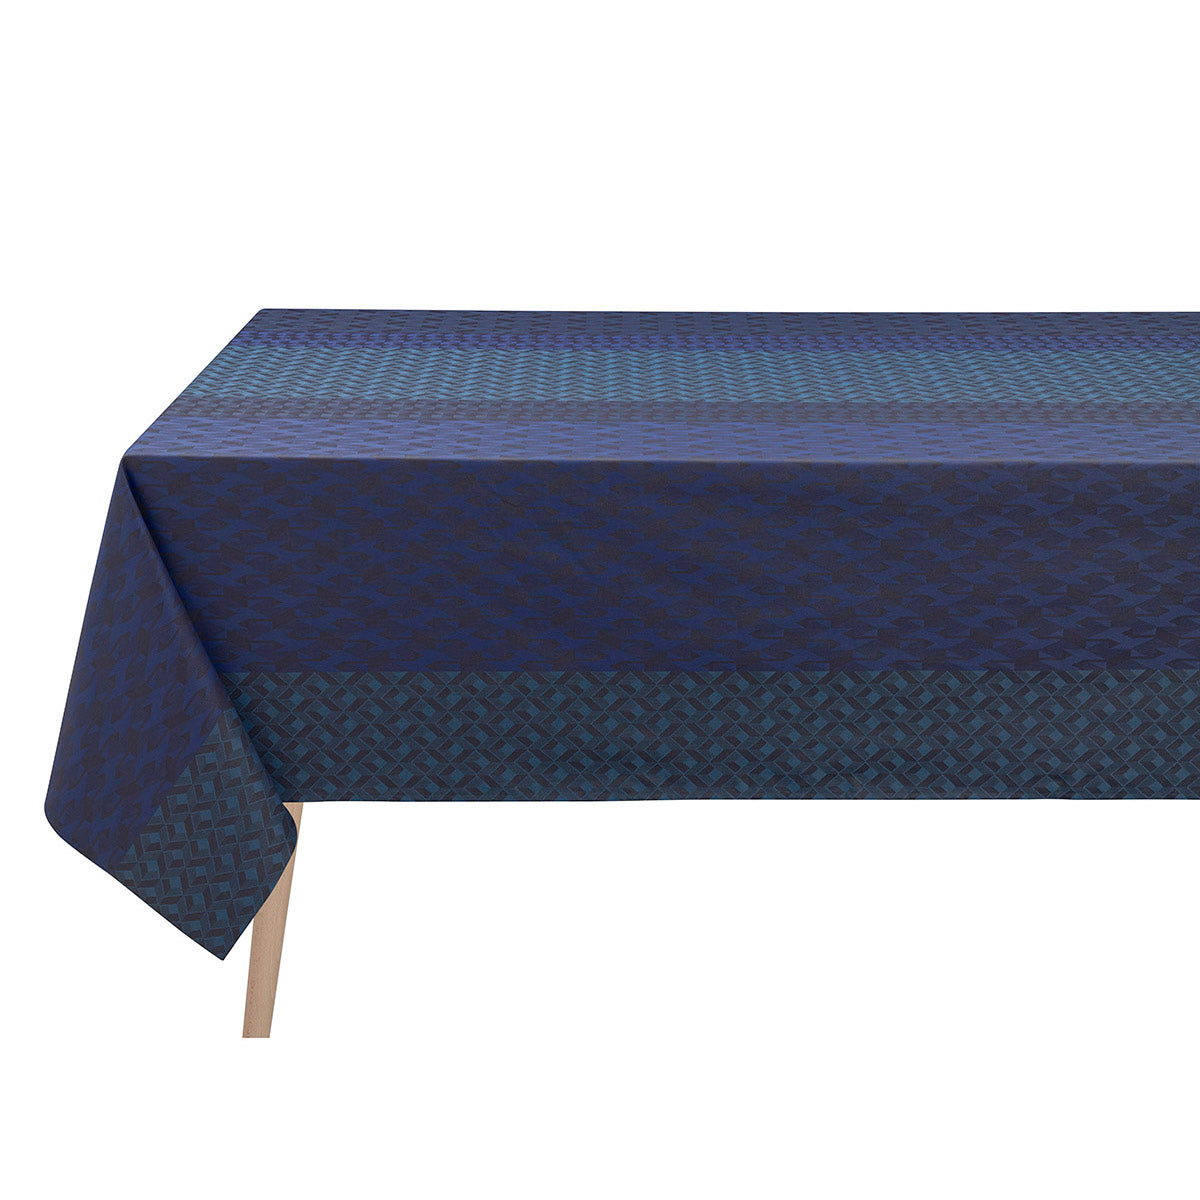 Tablecloths - Caractere Coated Cotton Blue Tablecloth | Le Jacquard Français Table Linens